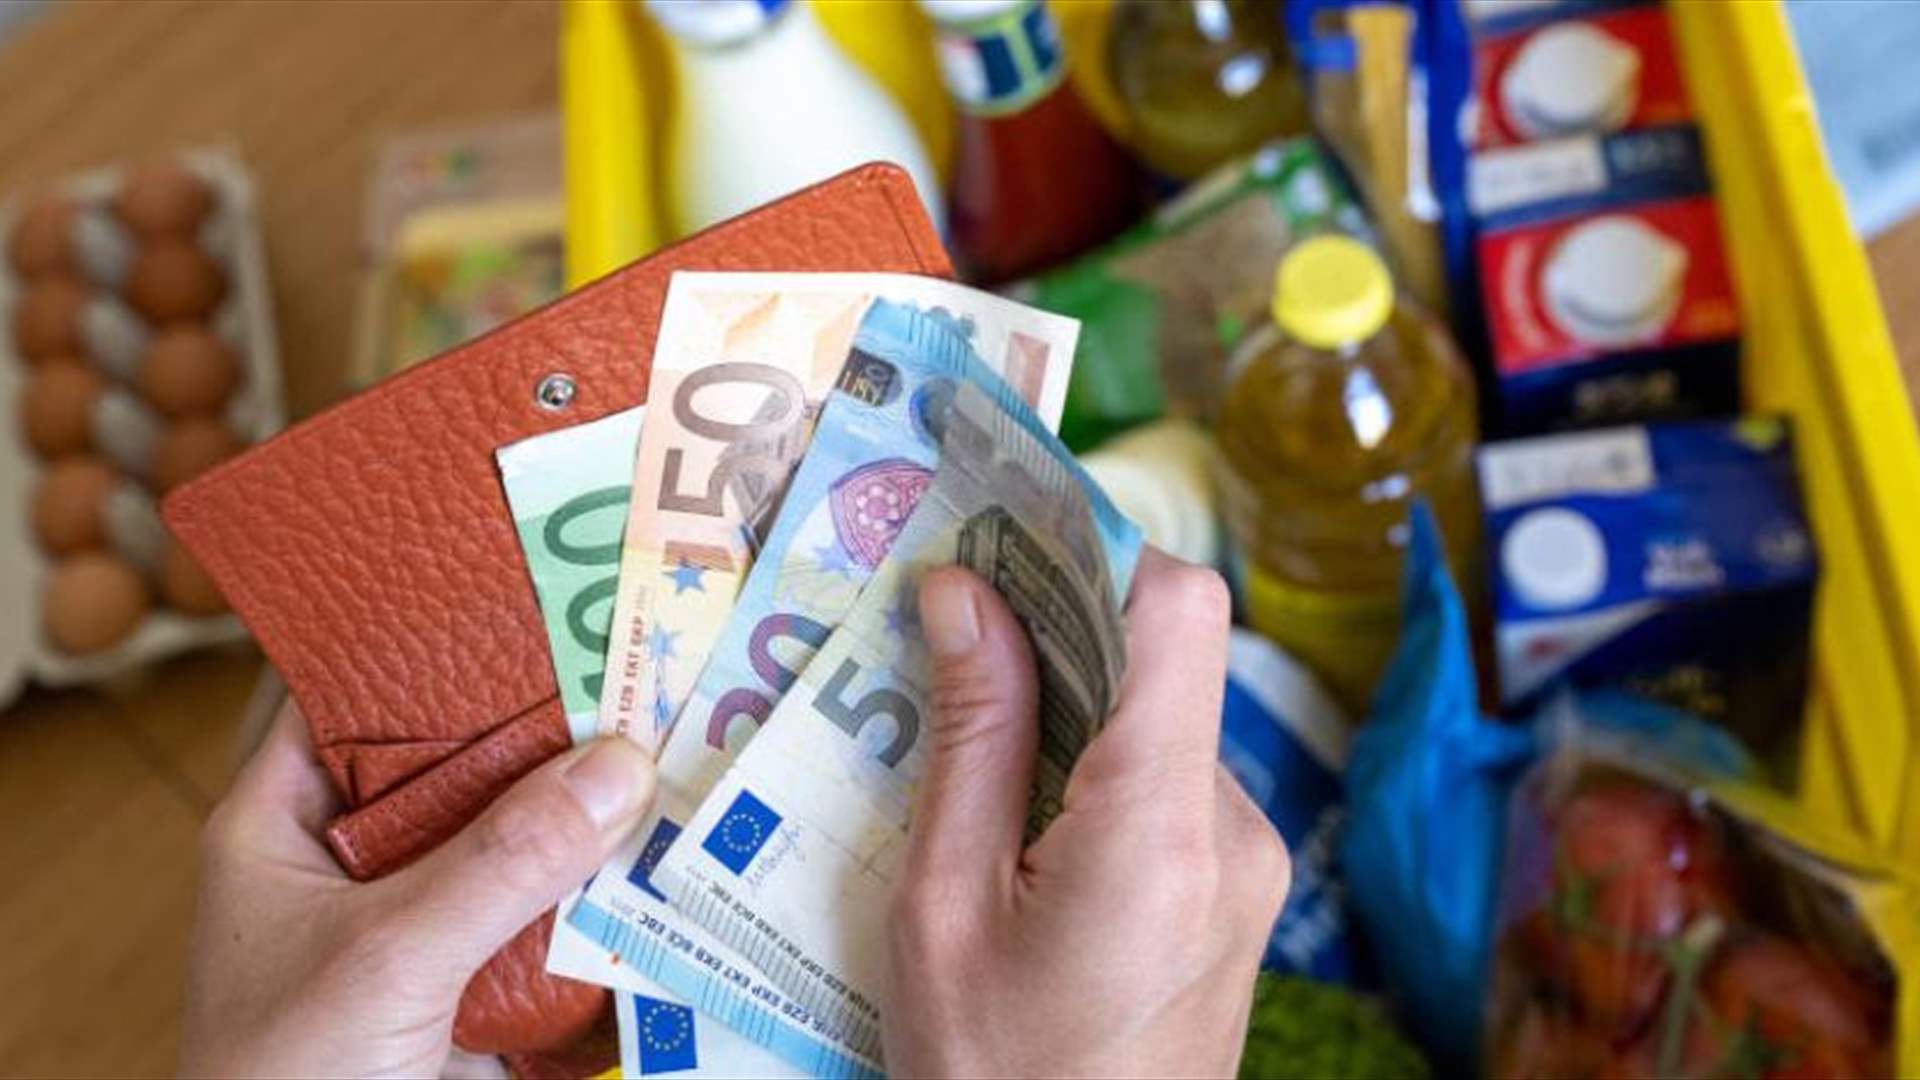 ارتفاع أسعار المواد الغذائية أوقف تراجع التضخم في منطقة اليورو